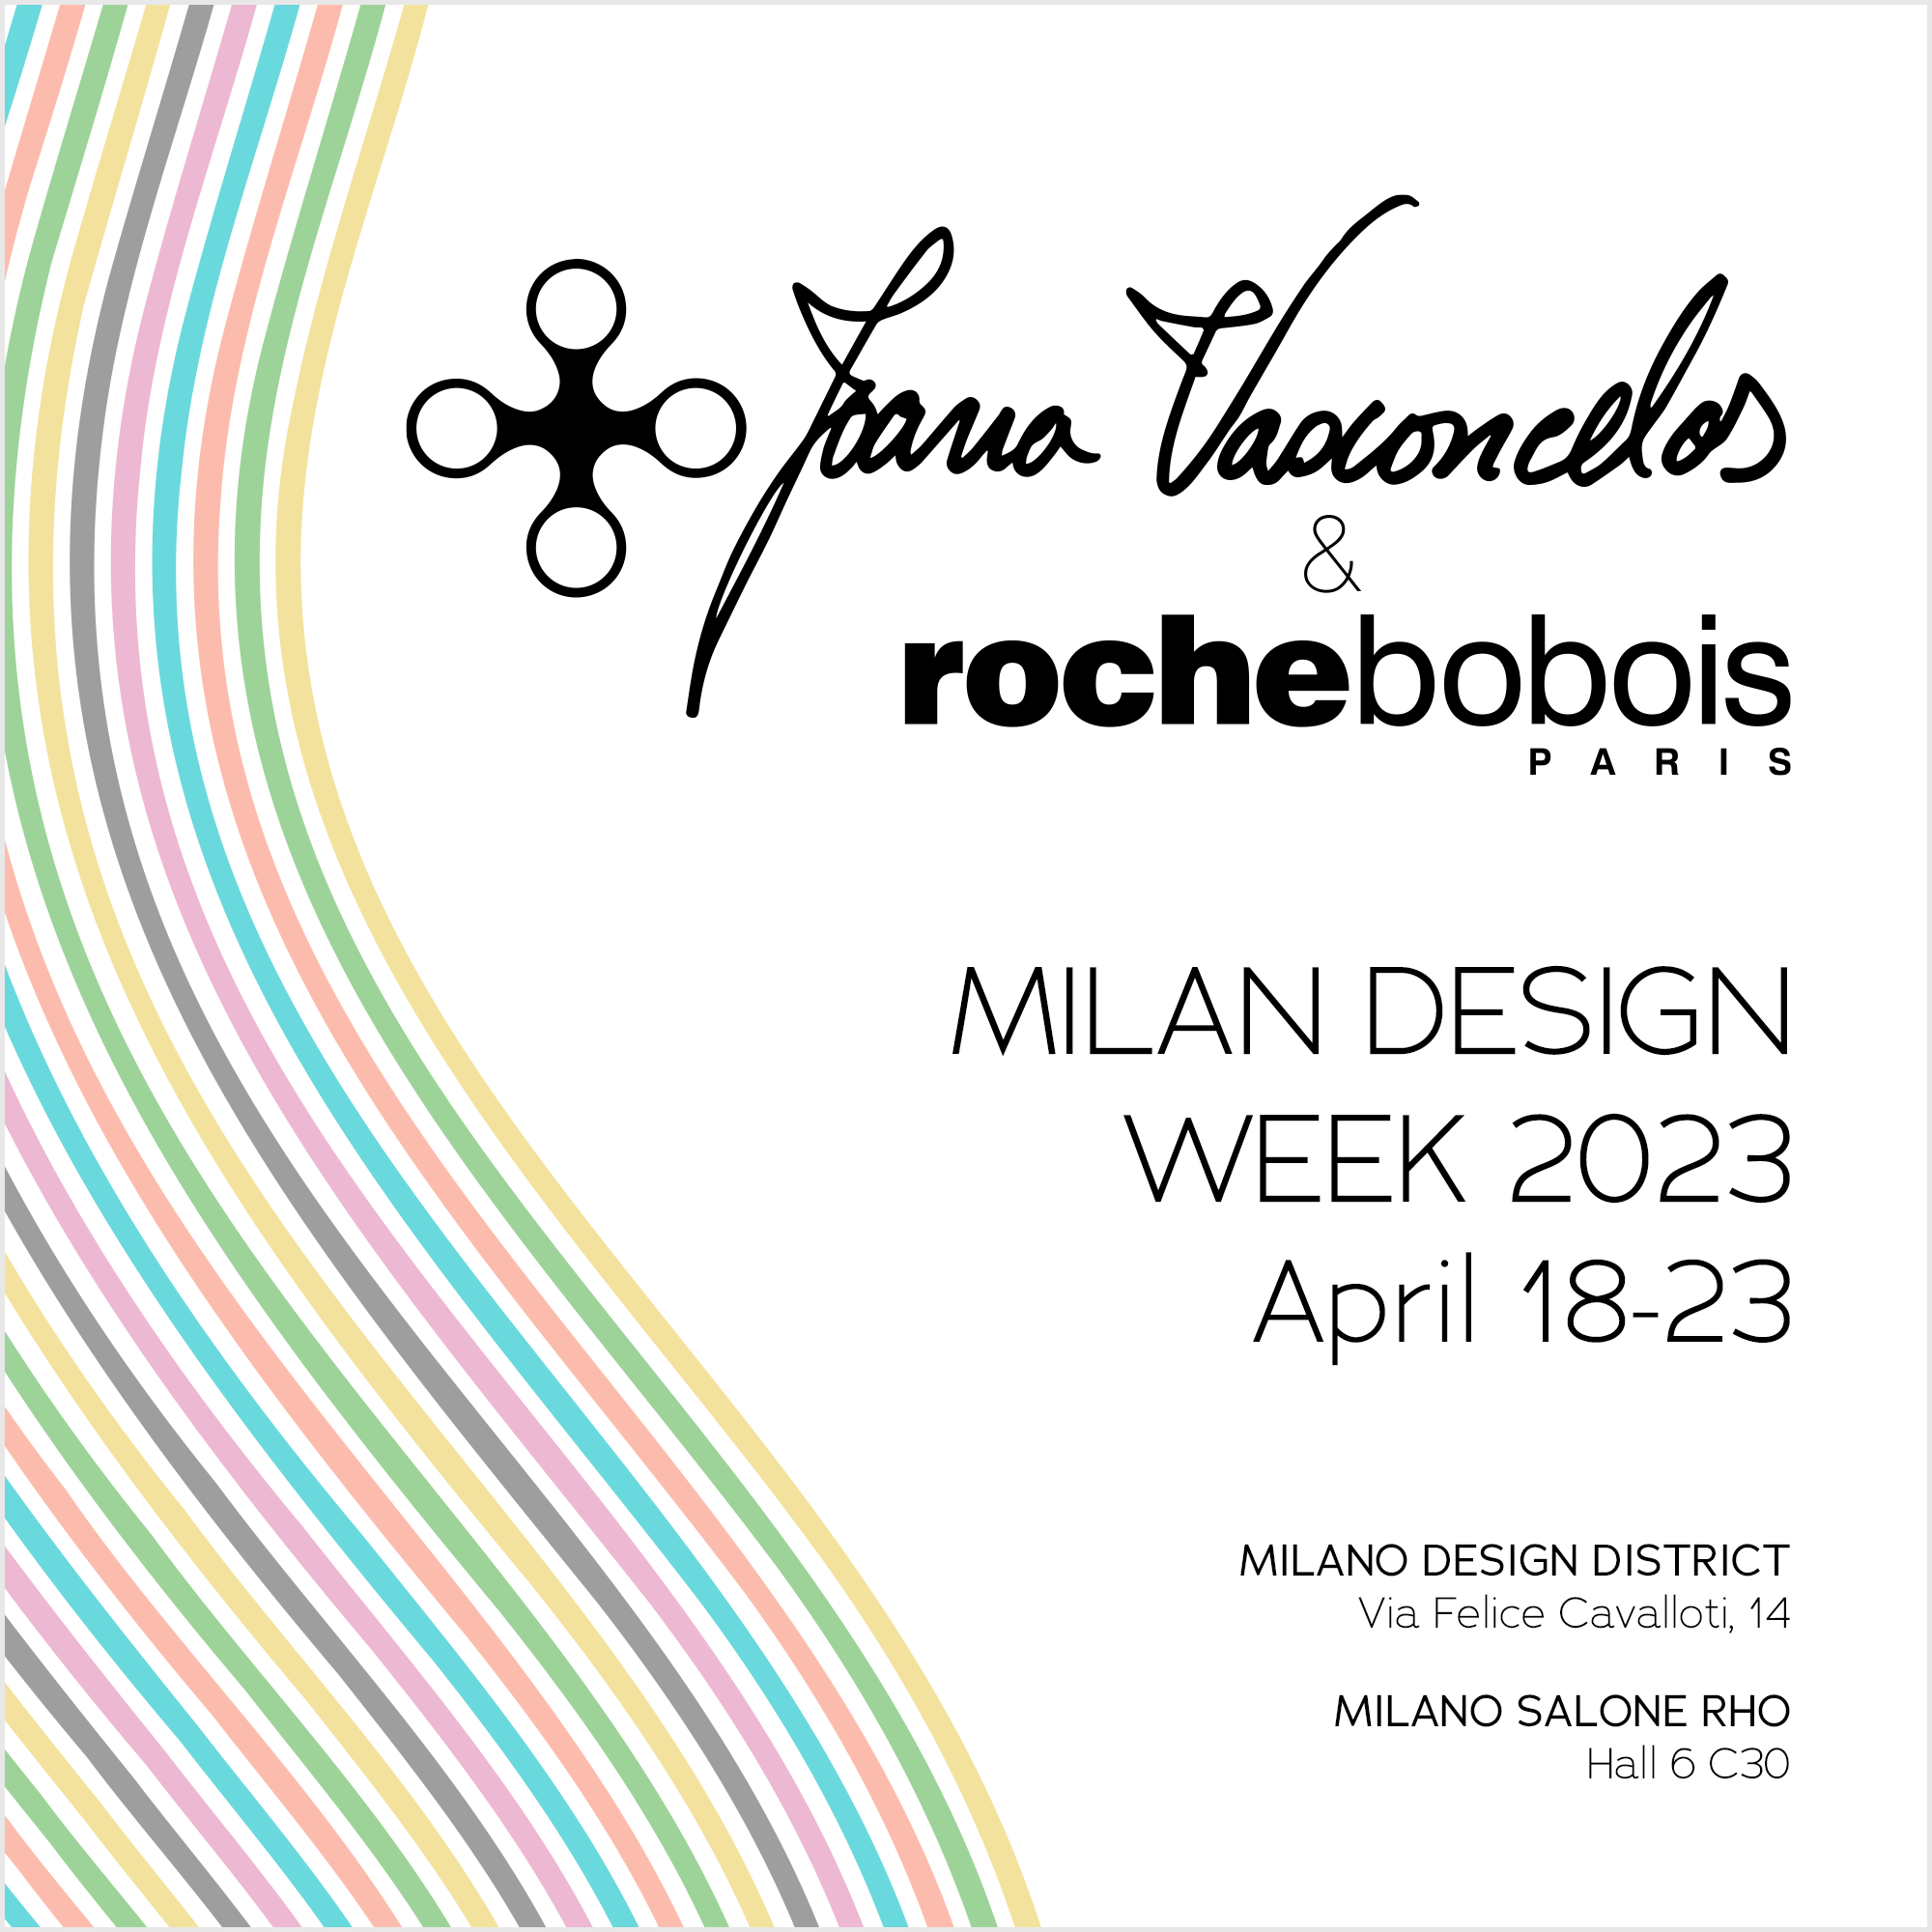 Joana Vasconcelos & Roche Bobois in Milan